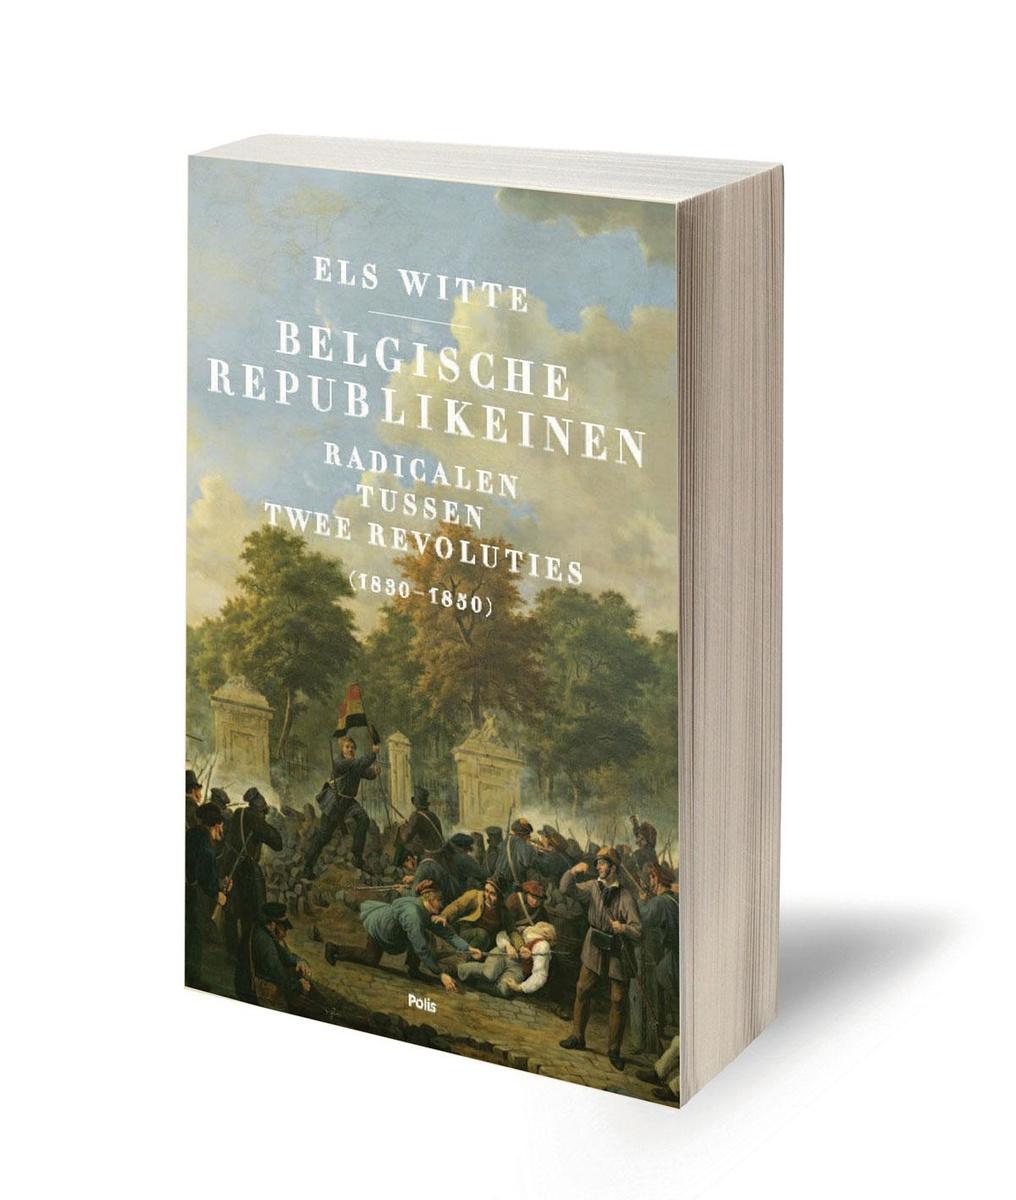 Els Witte, Belgische republikeinen.  Radicalen tussen twee revoluties (1830-1850), Polis, 431 blz., 27,50 euro